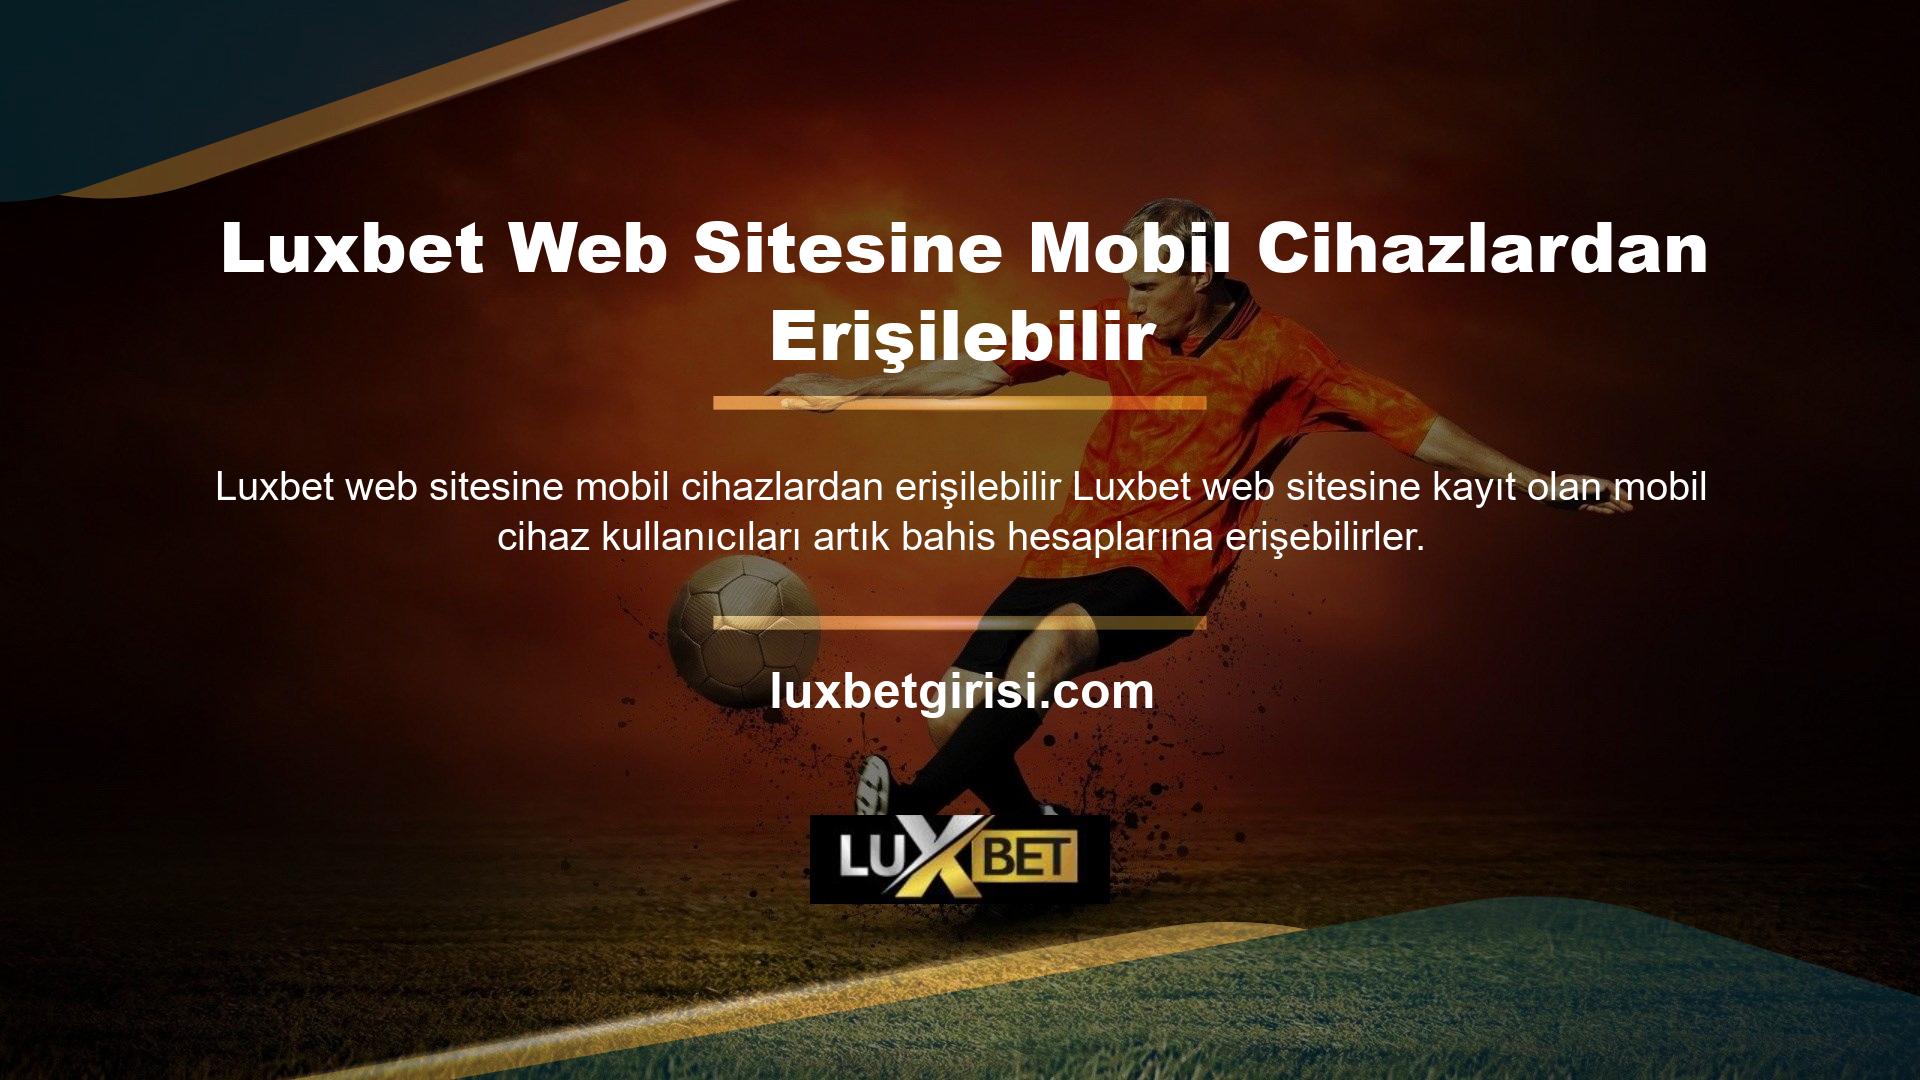 Luxbet web sitesi mobil cihazlarda daha kullanıcı dostu, kullanışlı ve kullanımı kolaydır